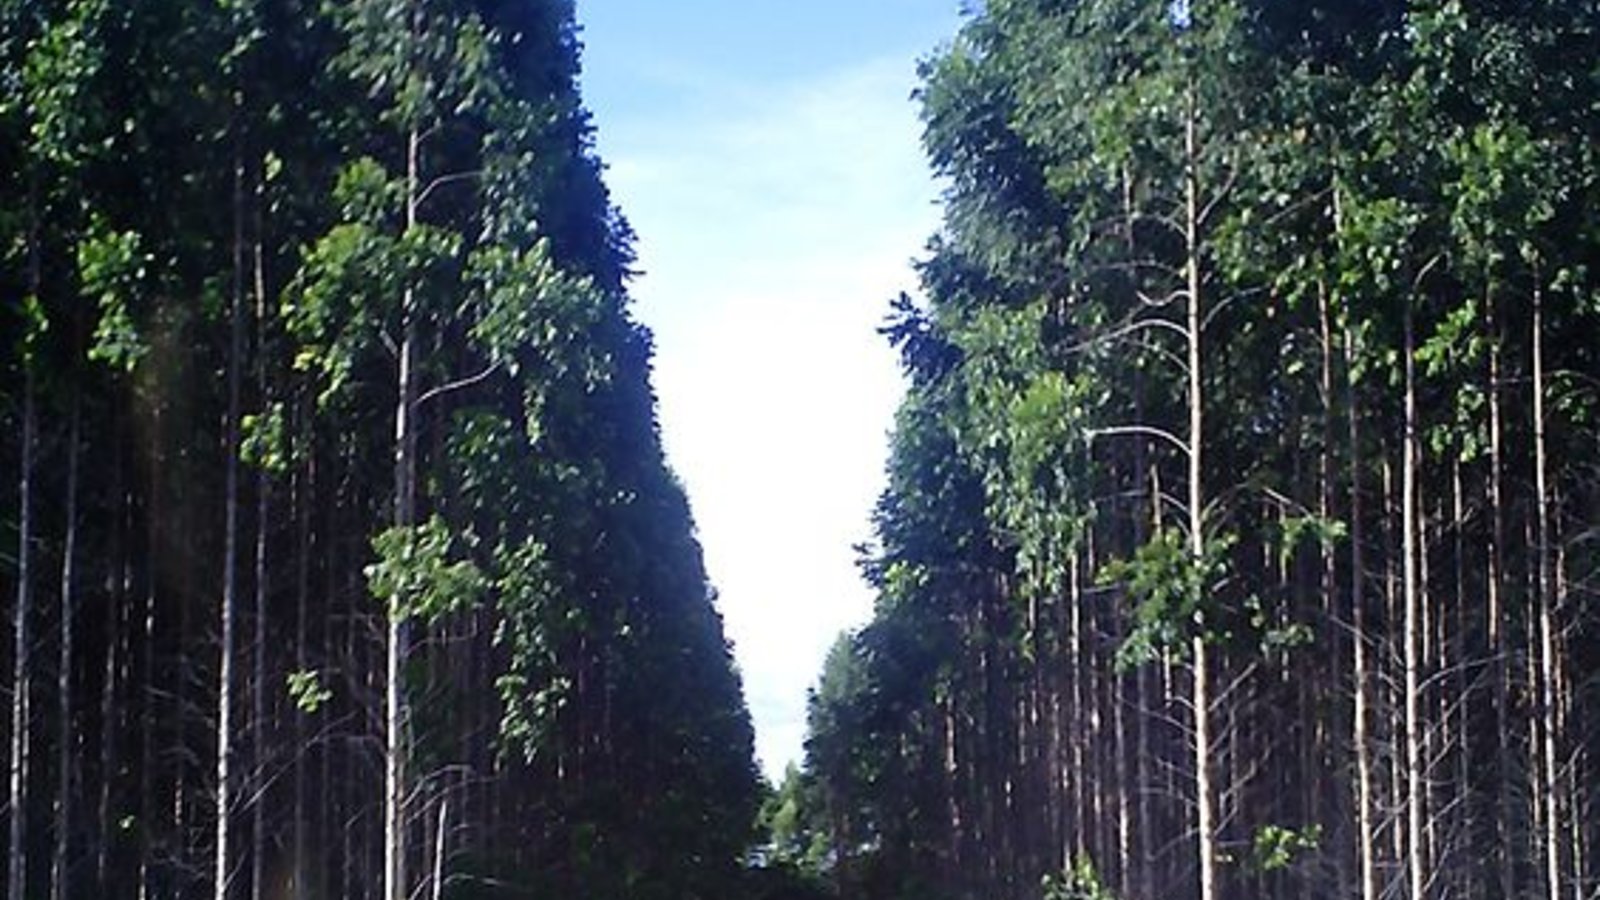 eucalyptus_forest_brazil_denis_rizzoli_wikicom.jpg